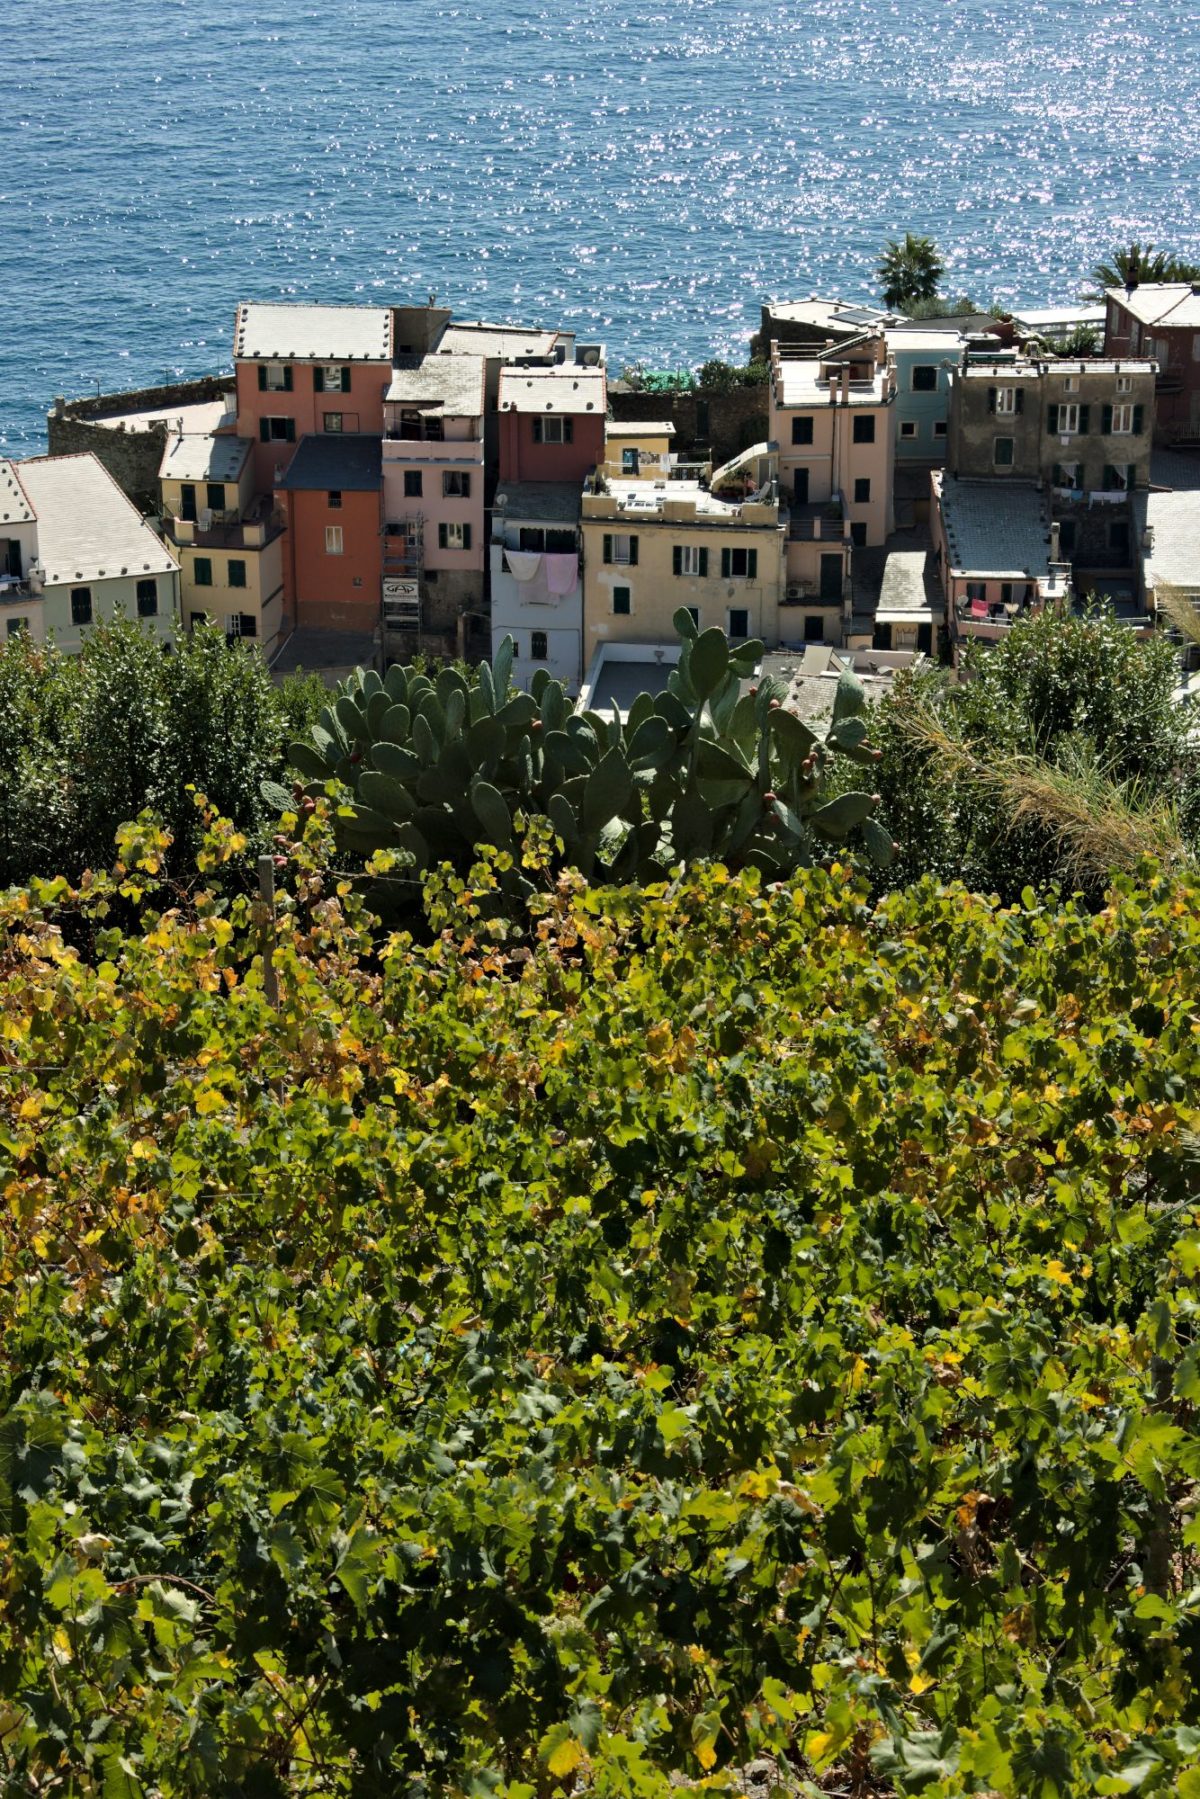 Vernazza. Three elements. Mare, architettura, natura alle Cinque Terre.